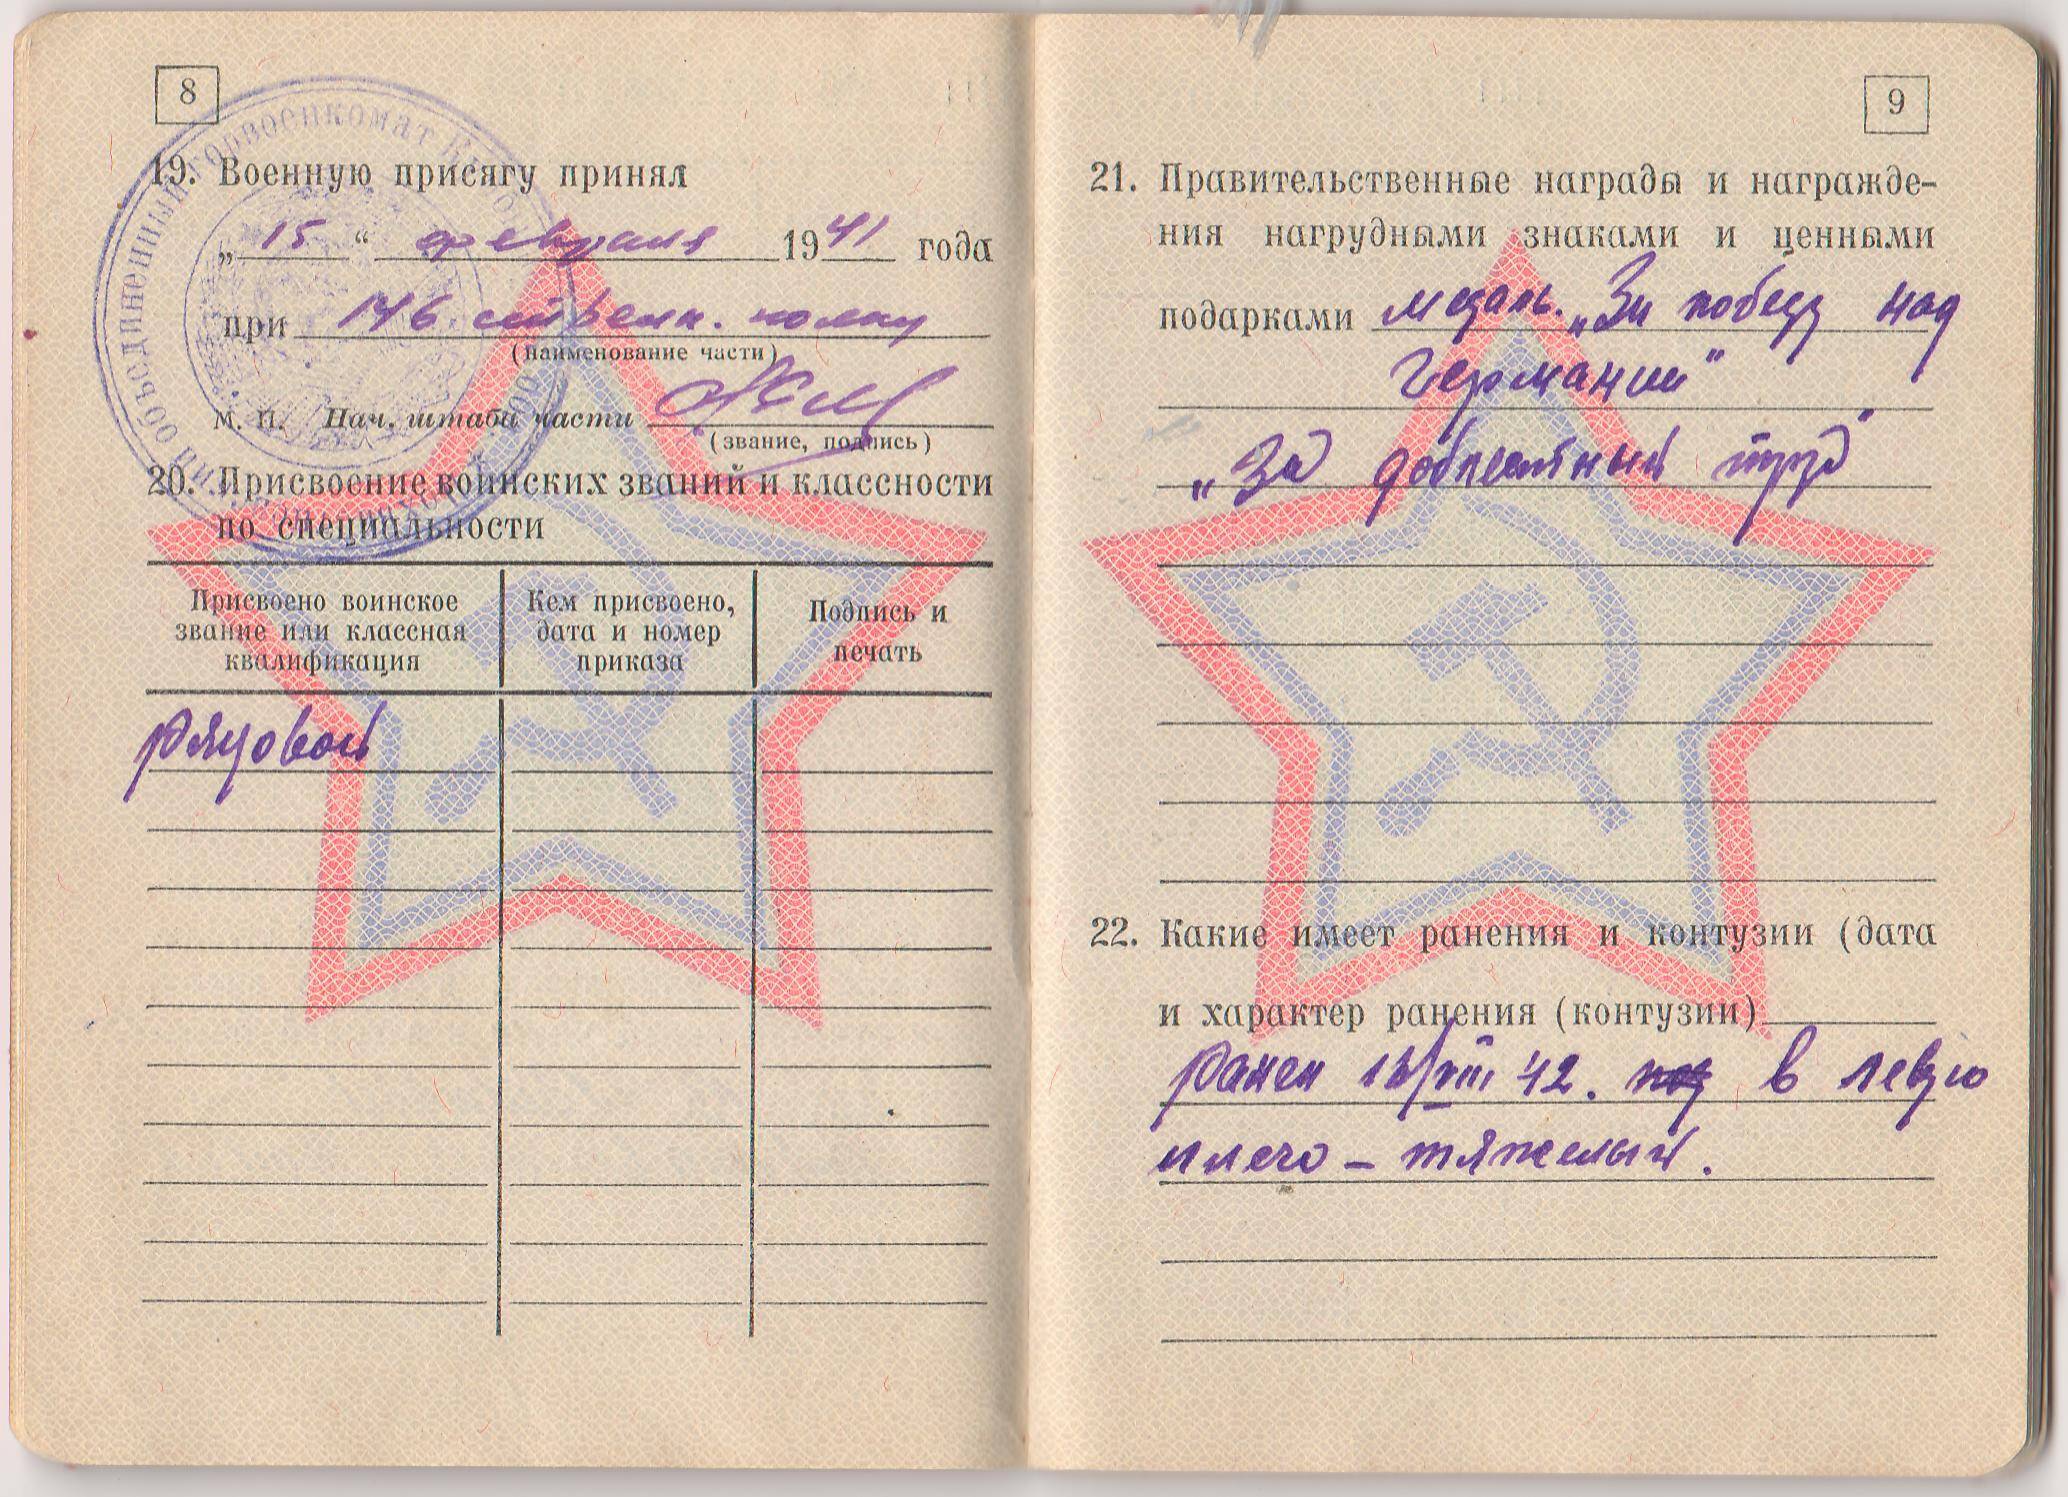 Военный билет при получении общегражданского паспорта